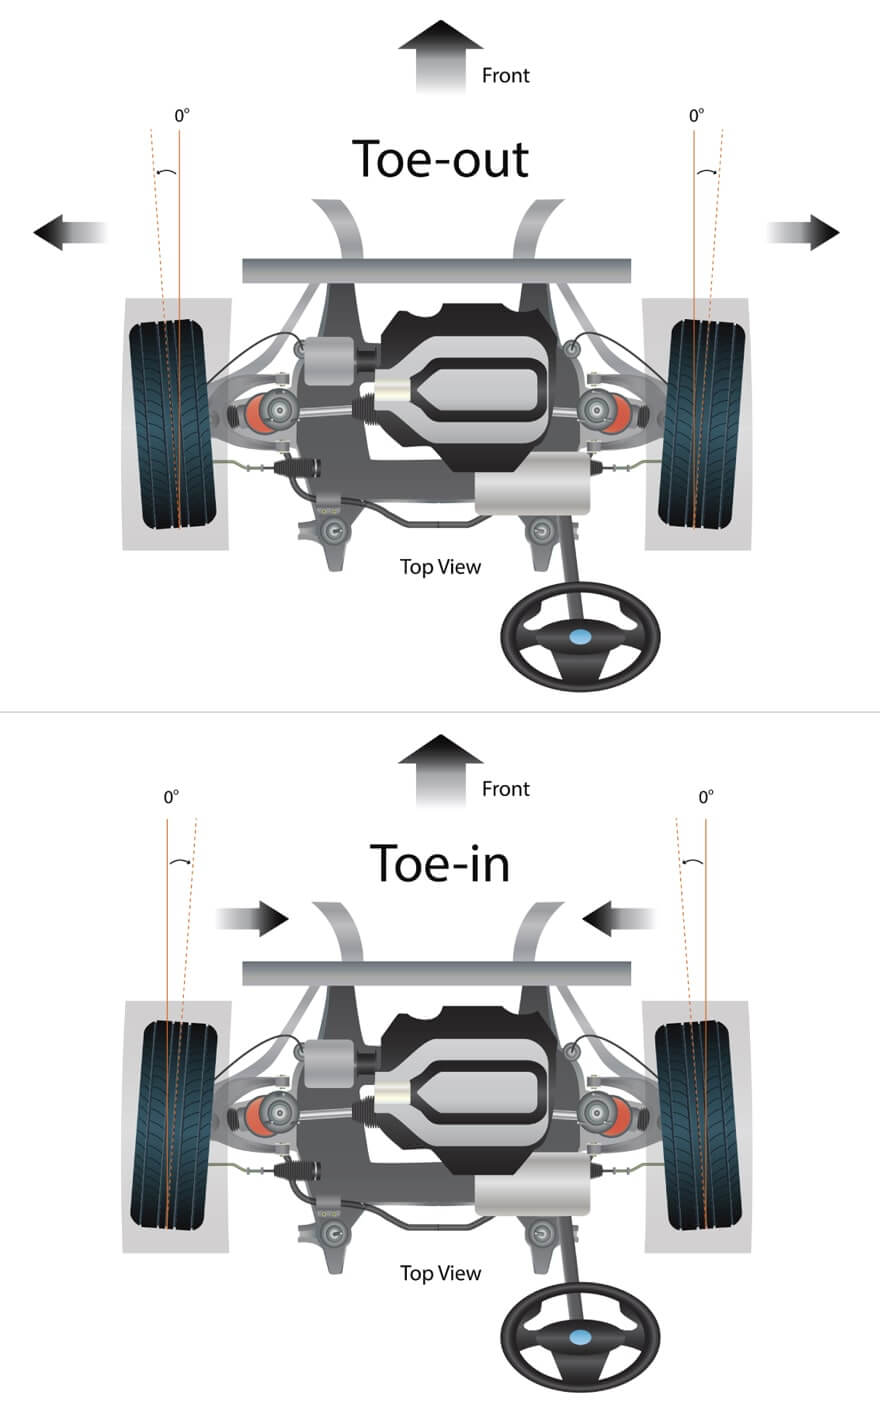 wheel alignment